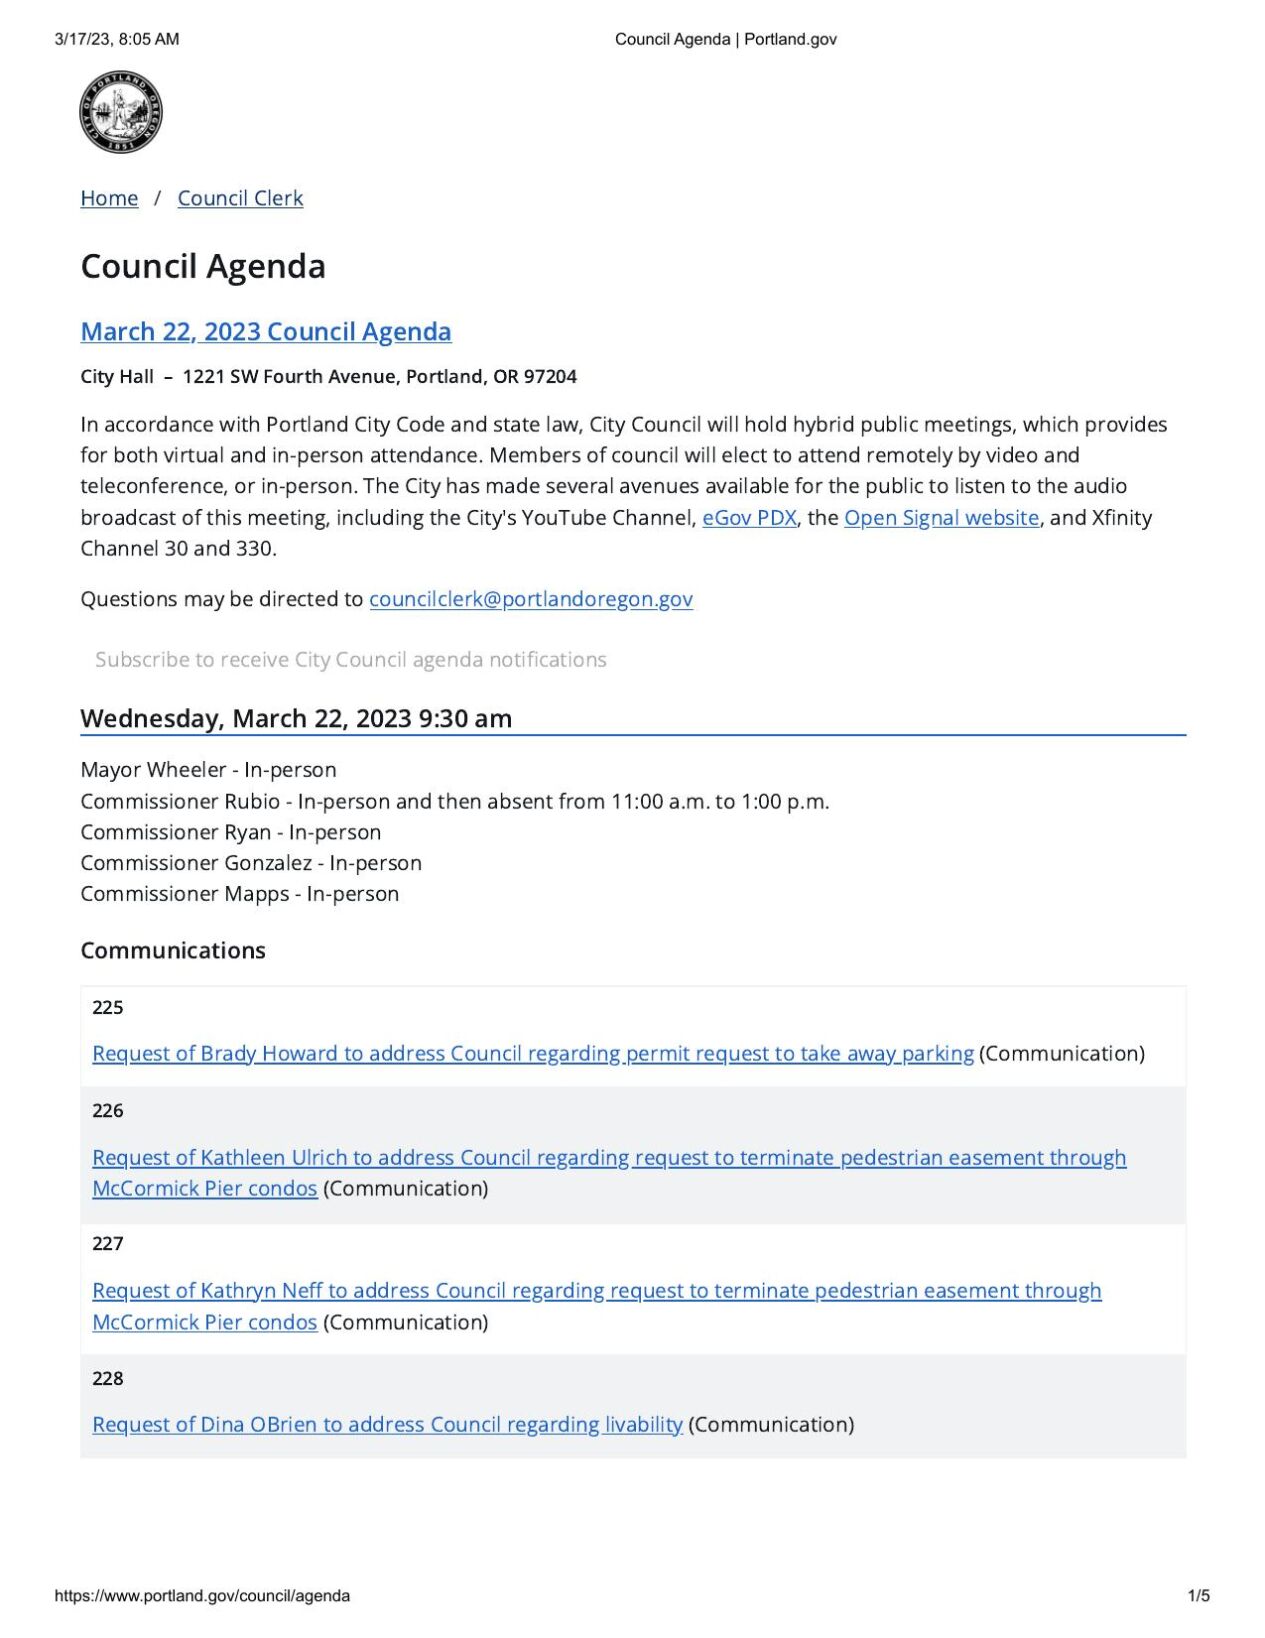 City of Portland Council Agenda